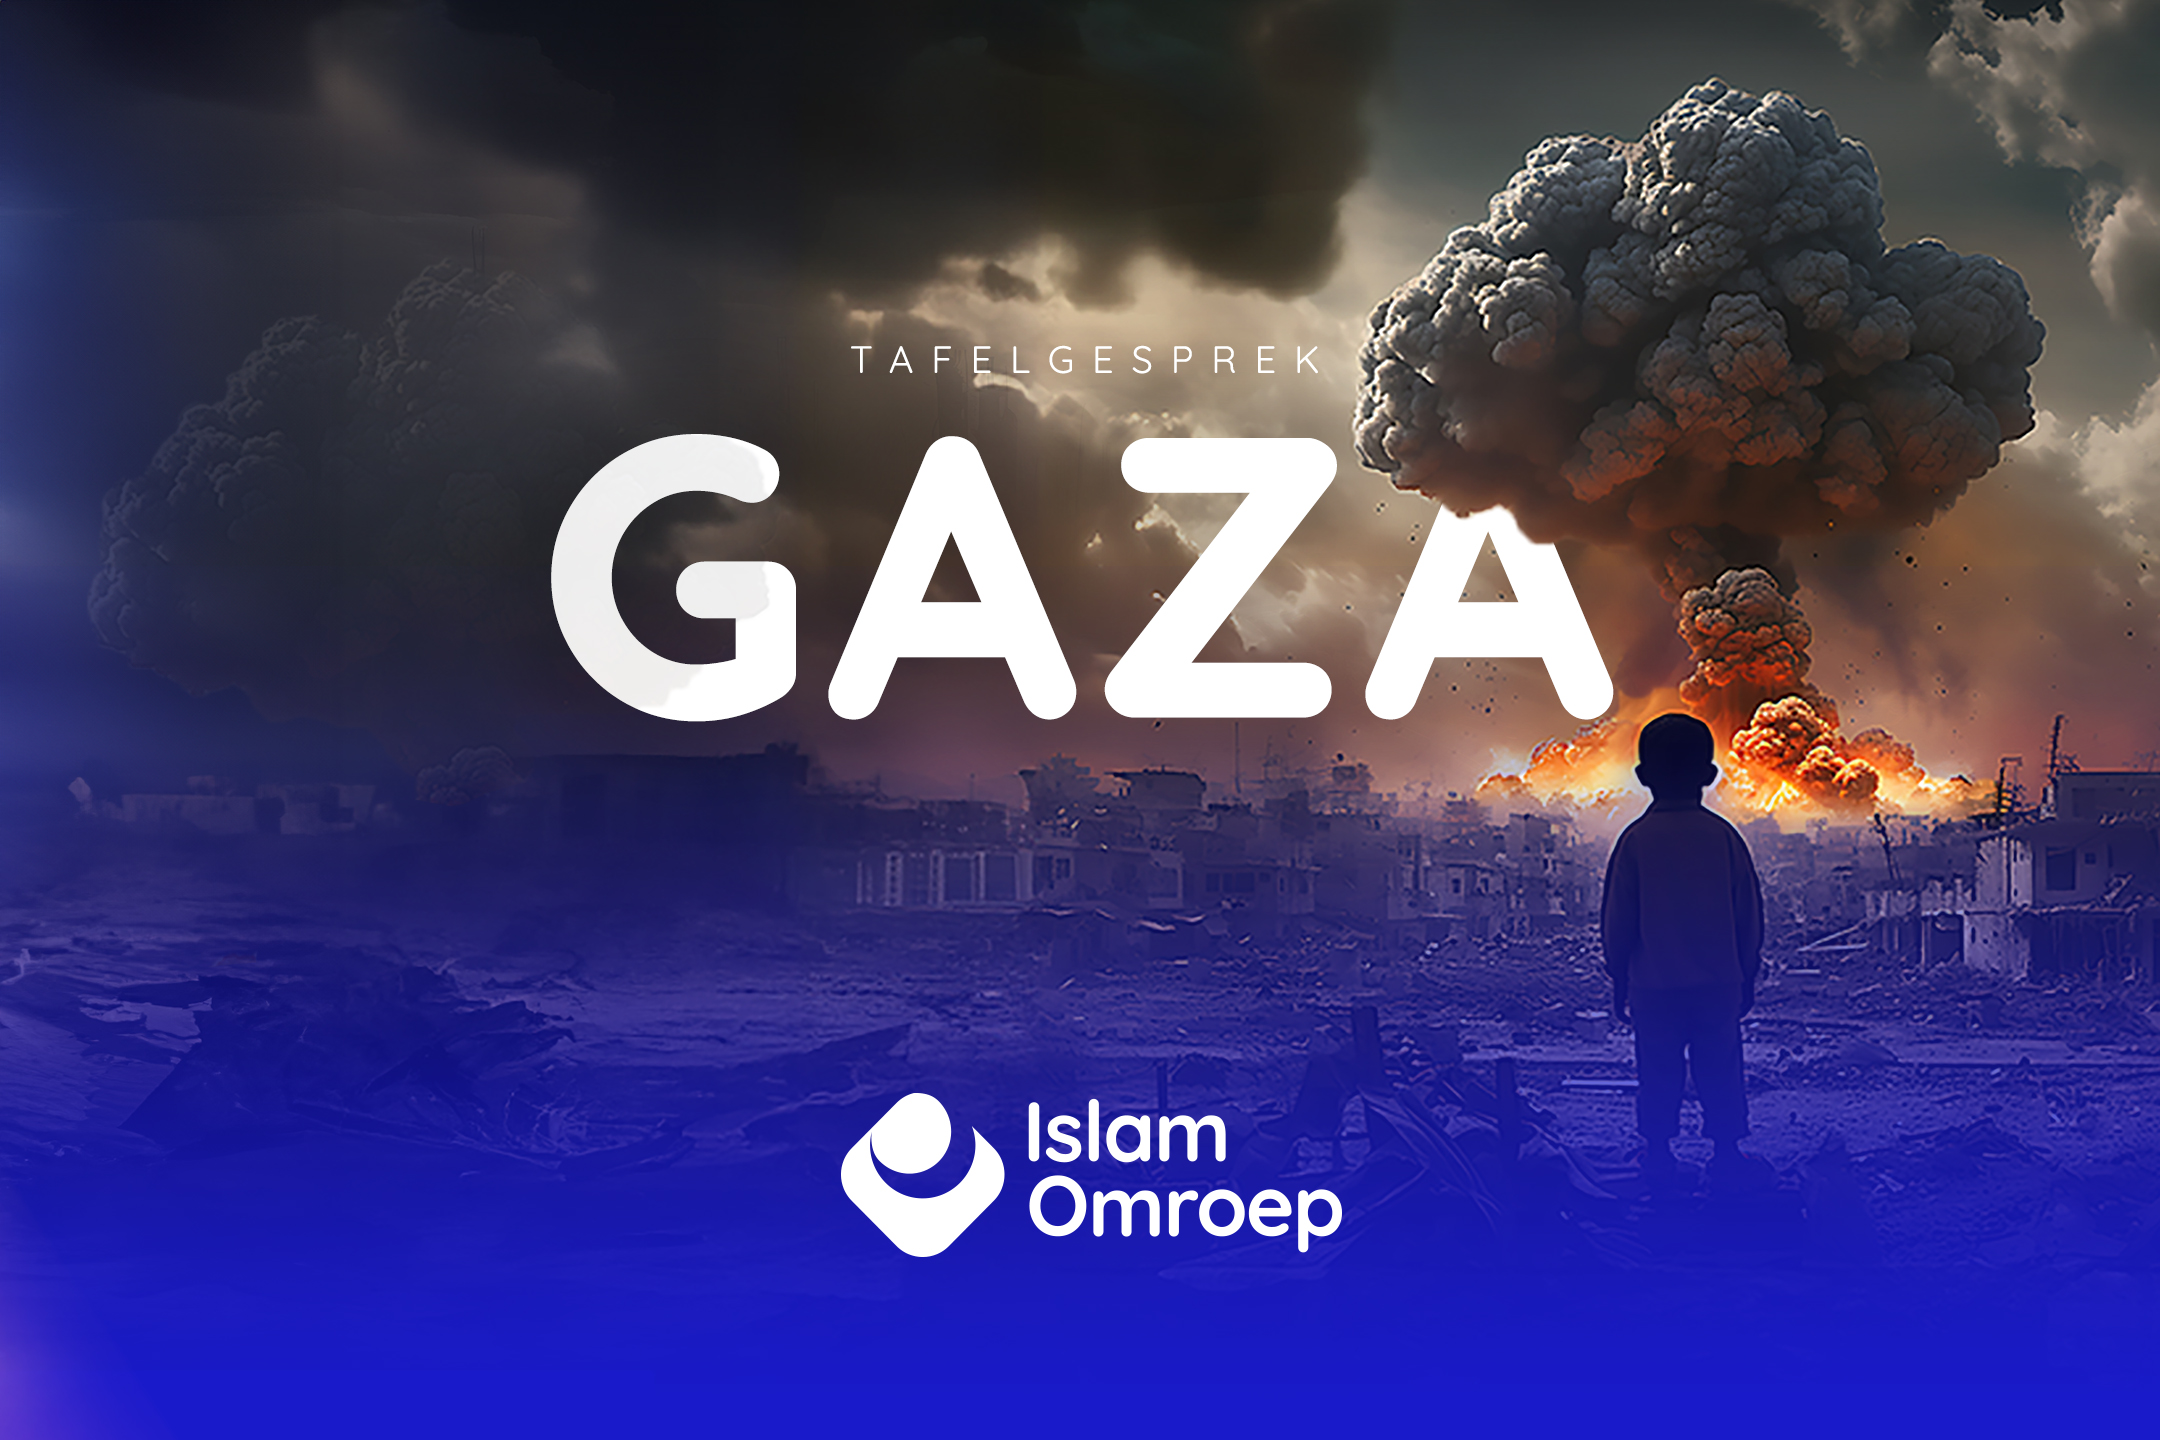 Tafelgesprek: Gaza